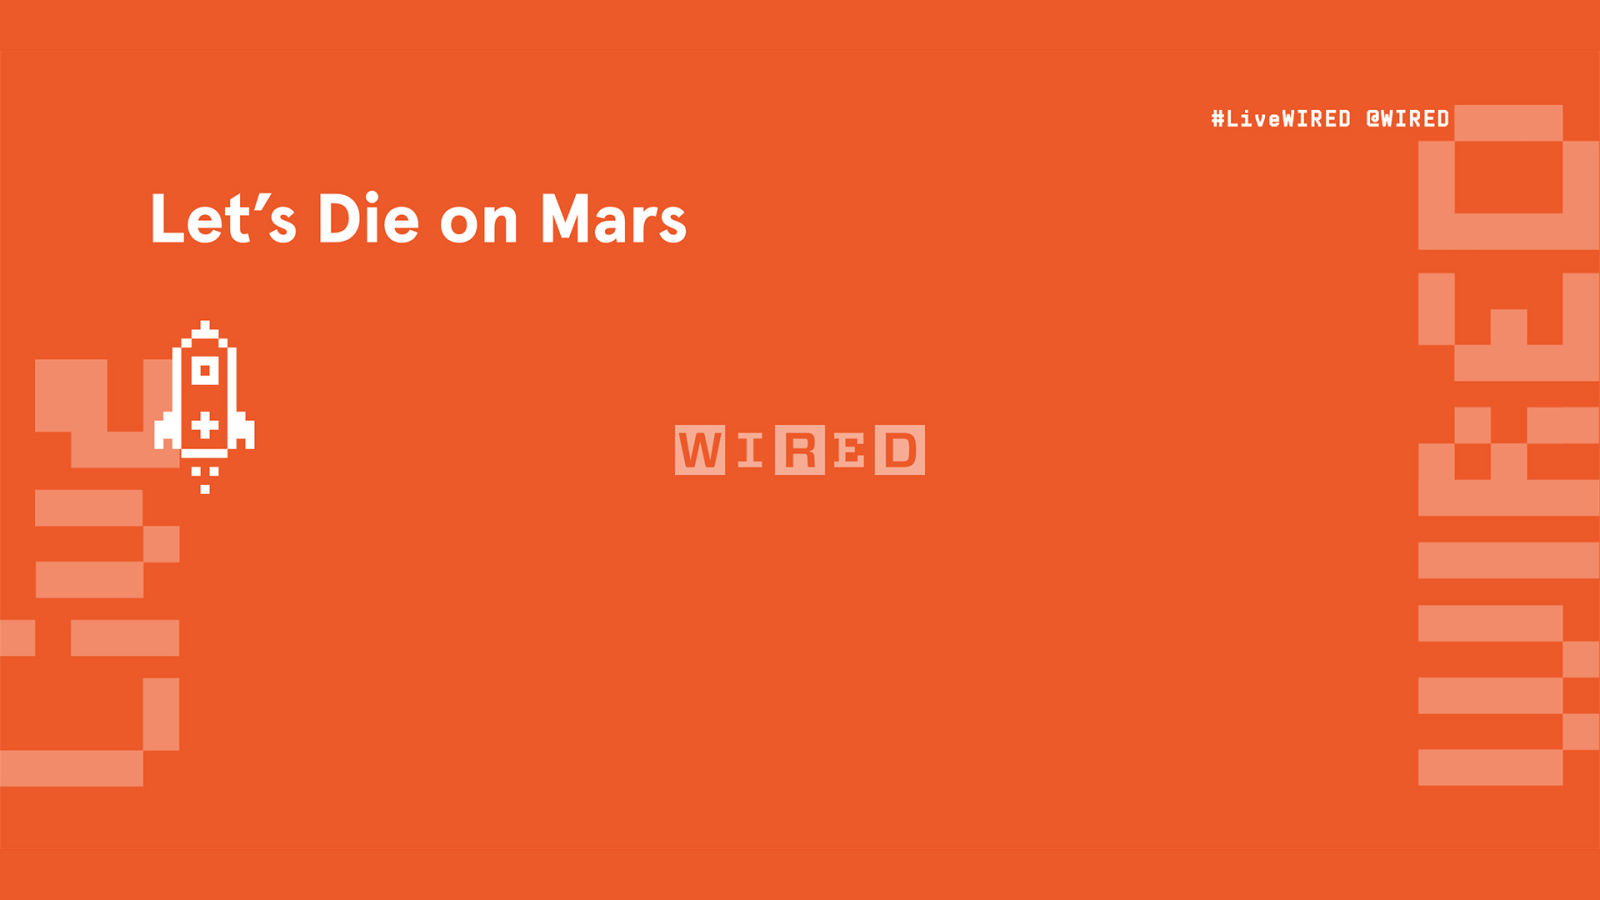 Let's Die On Mars